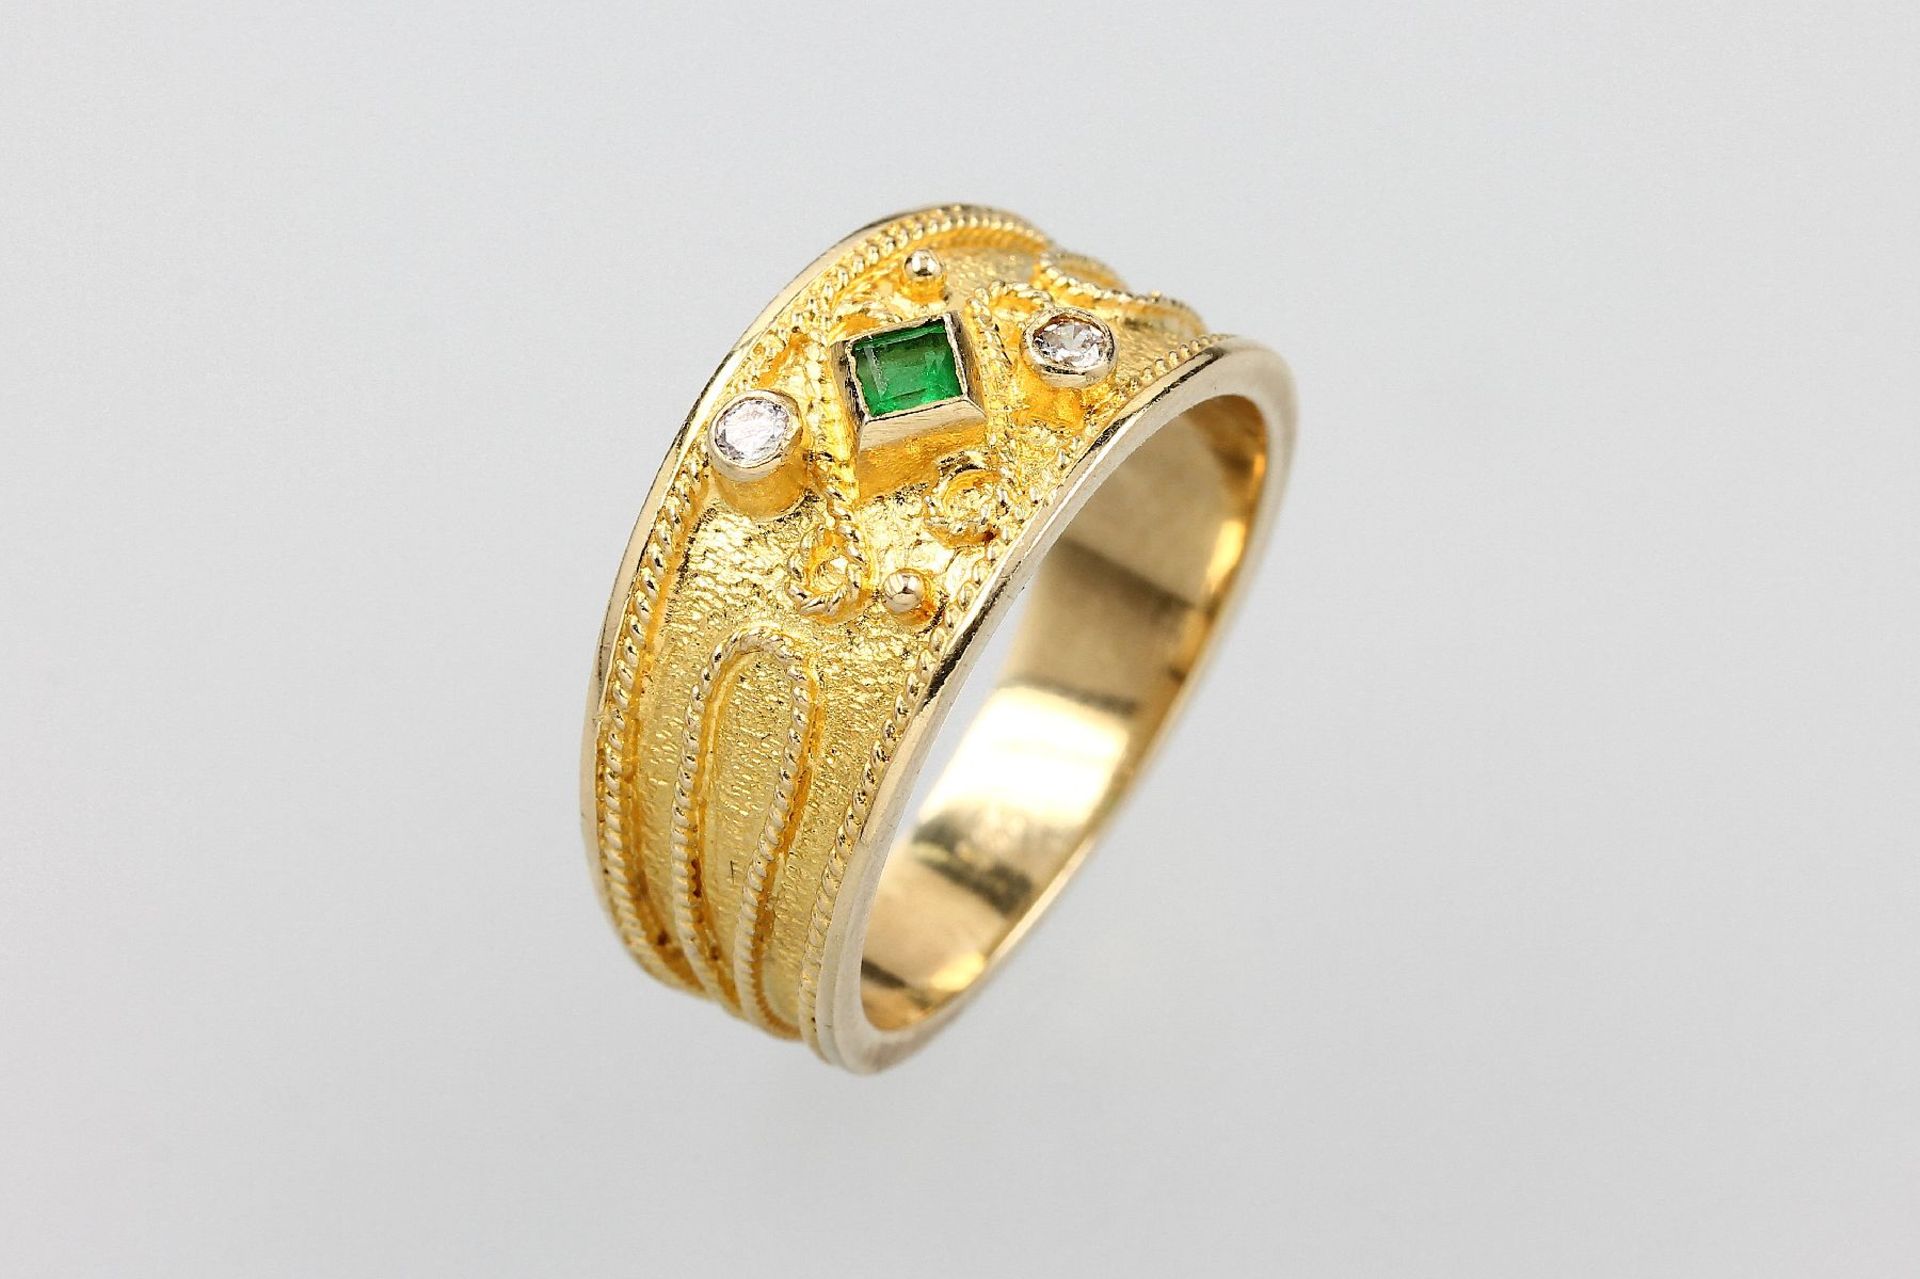 14 kt Gold Ring mit Smaragd und Diamanten, GG/WG 585/000, Schiene fein grav., mit Kordel-randverz.